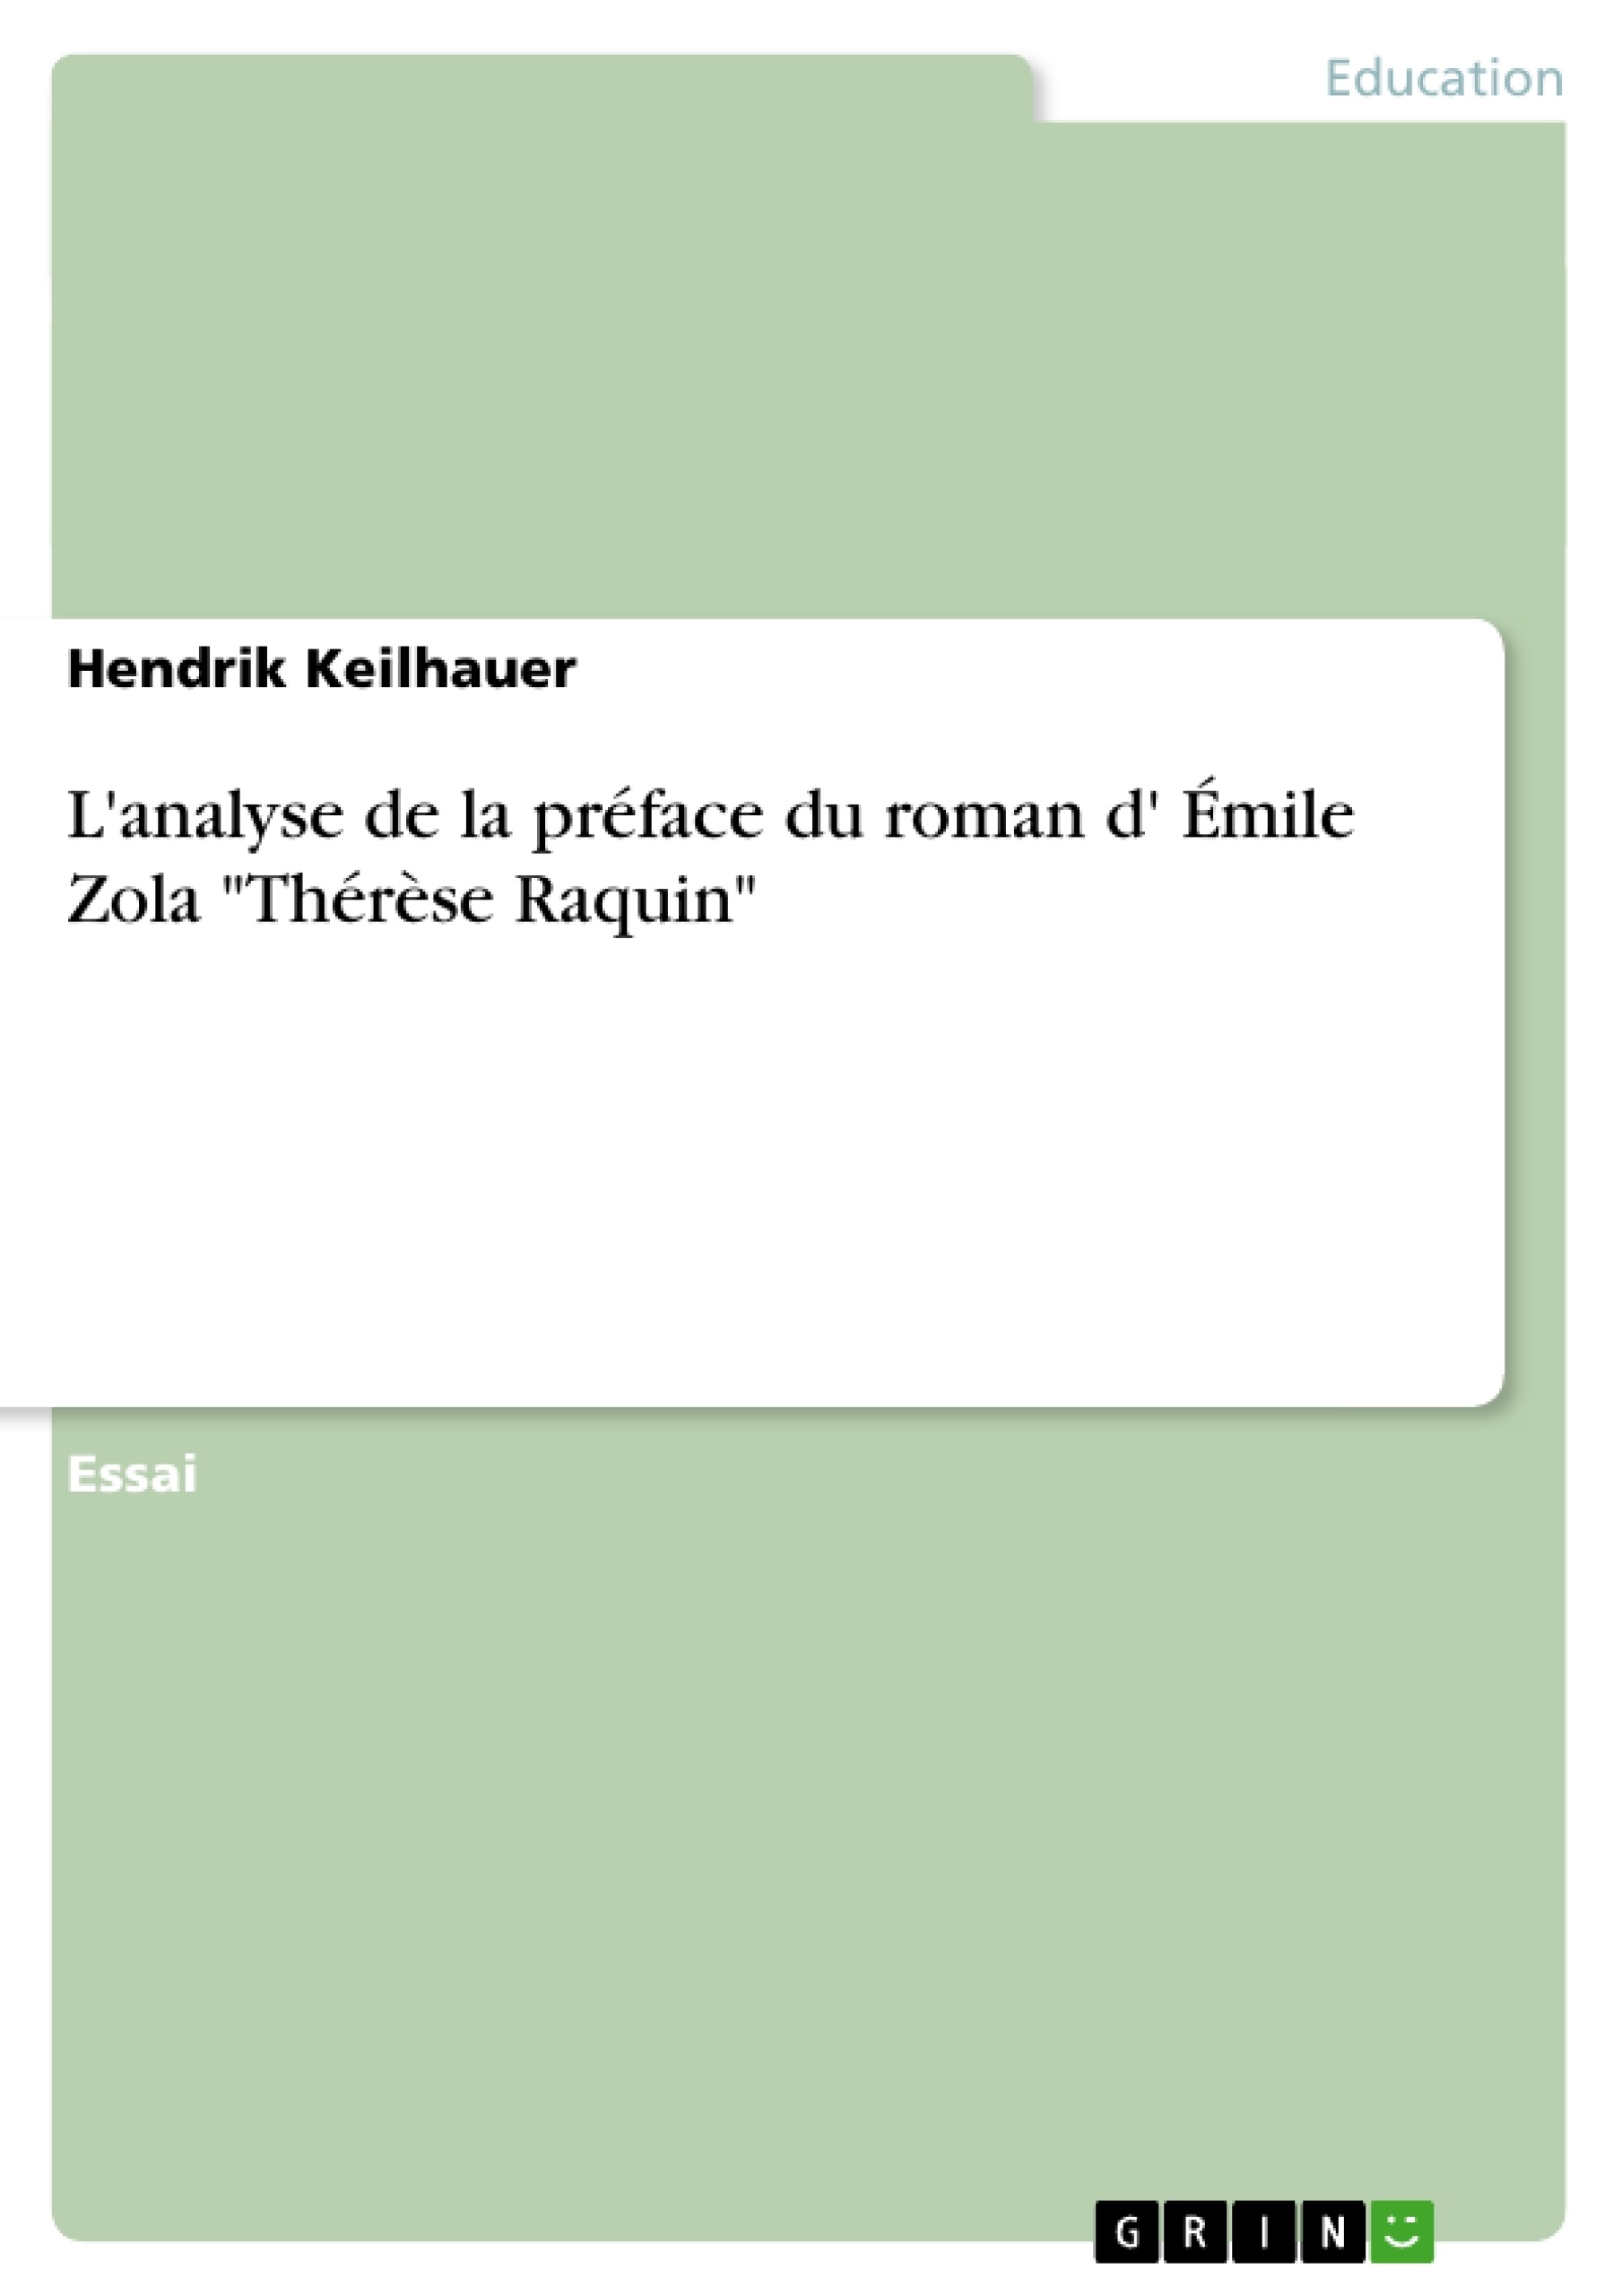 Titre: L'analyse de la préface du roman d' Émile Zola "Thérèse Raquin" 